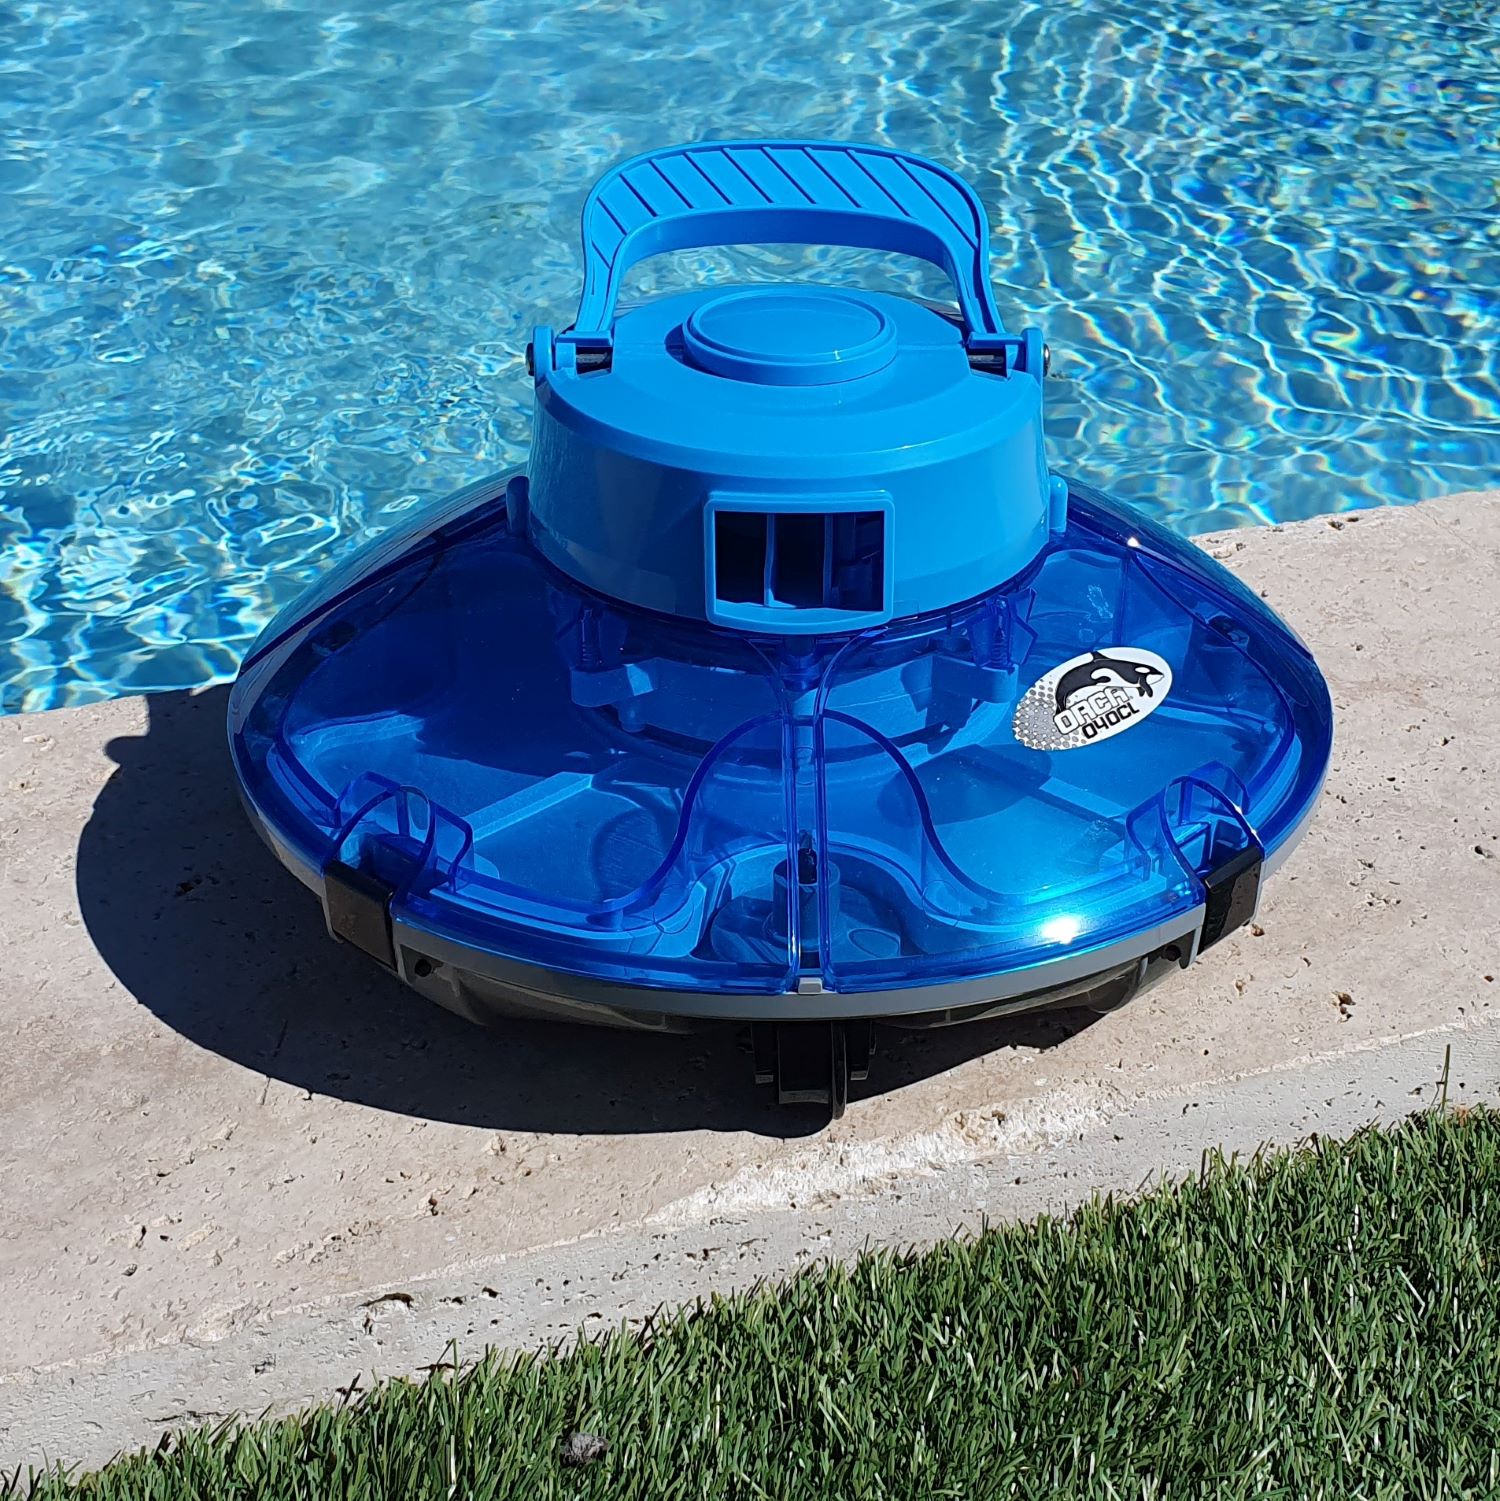 Comment entretenir son robot de piscine électrique ?